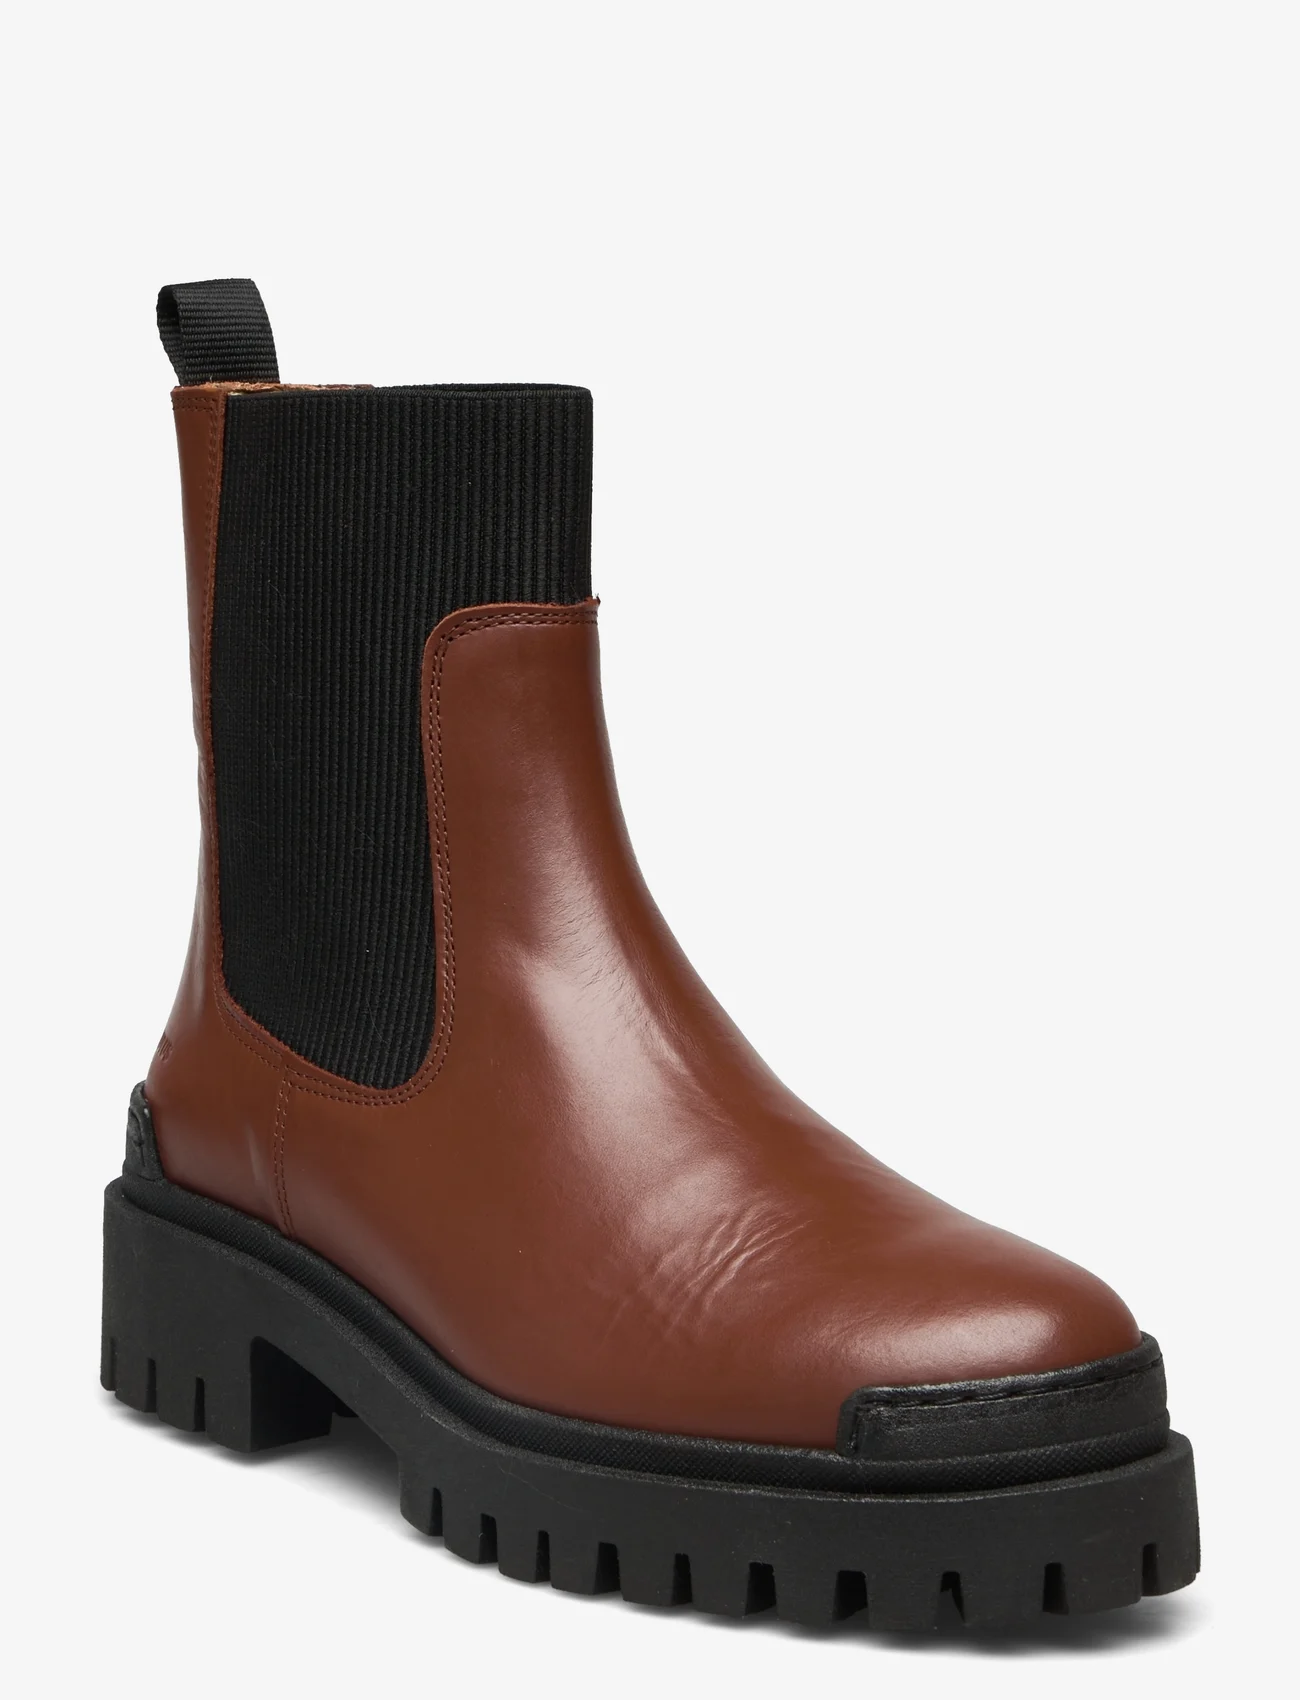 ANGULUS - Boots - flat - chelsea boots - 1705/019 terracotta/black - 0